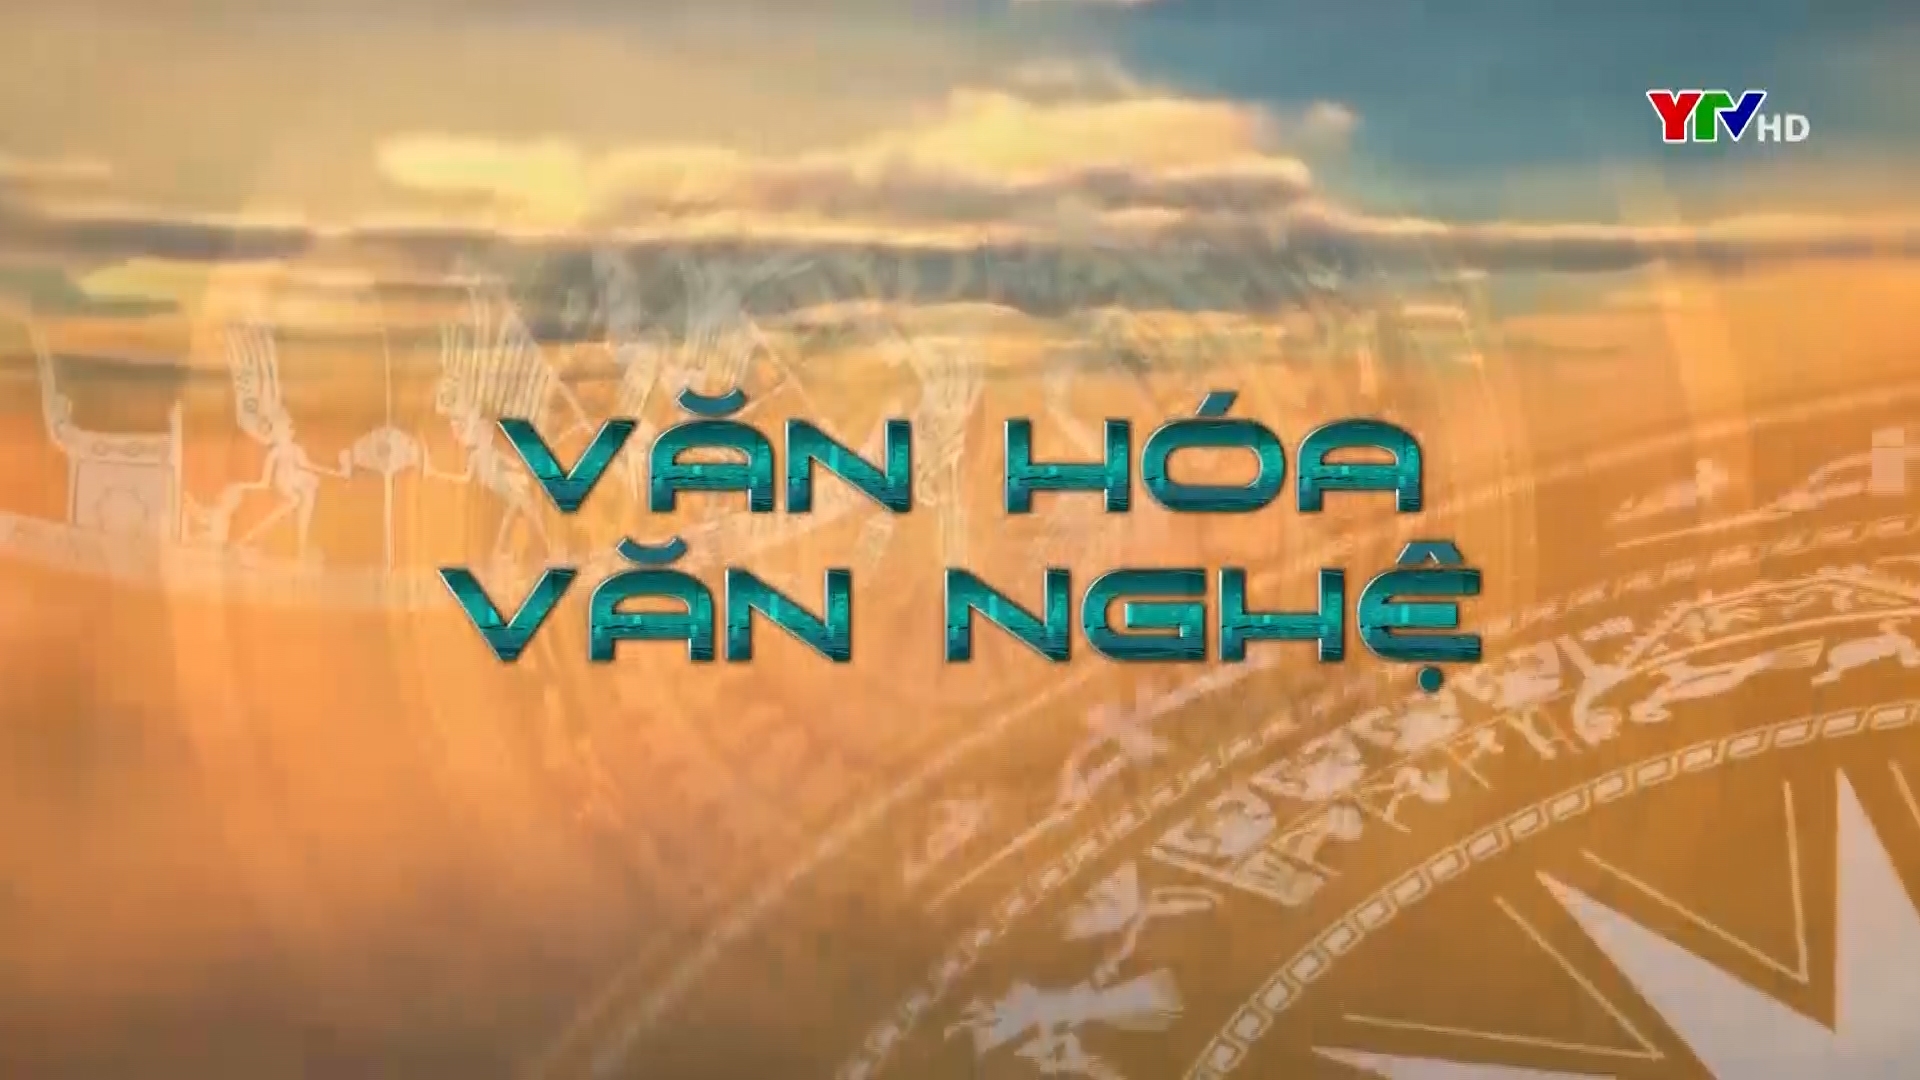 VHVN trên YTV góp phần quảng bá hình ảnh quê hương Yên Bái